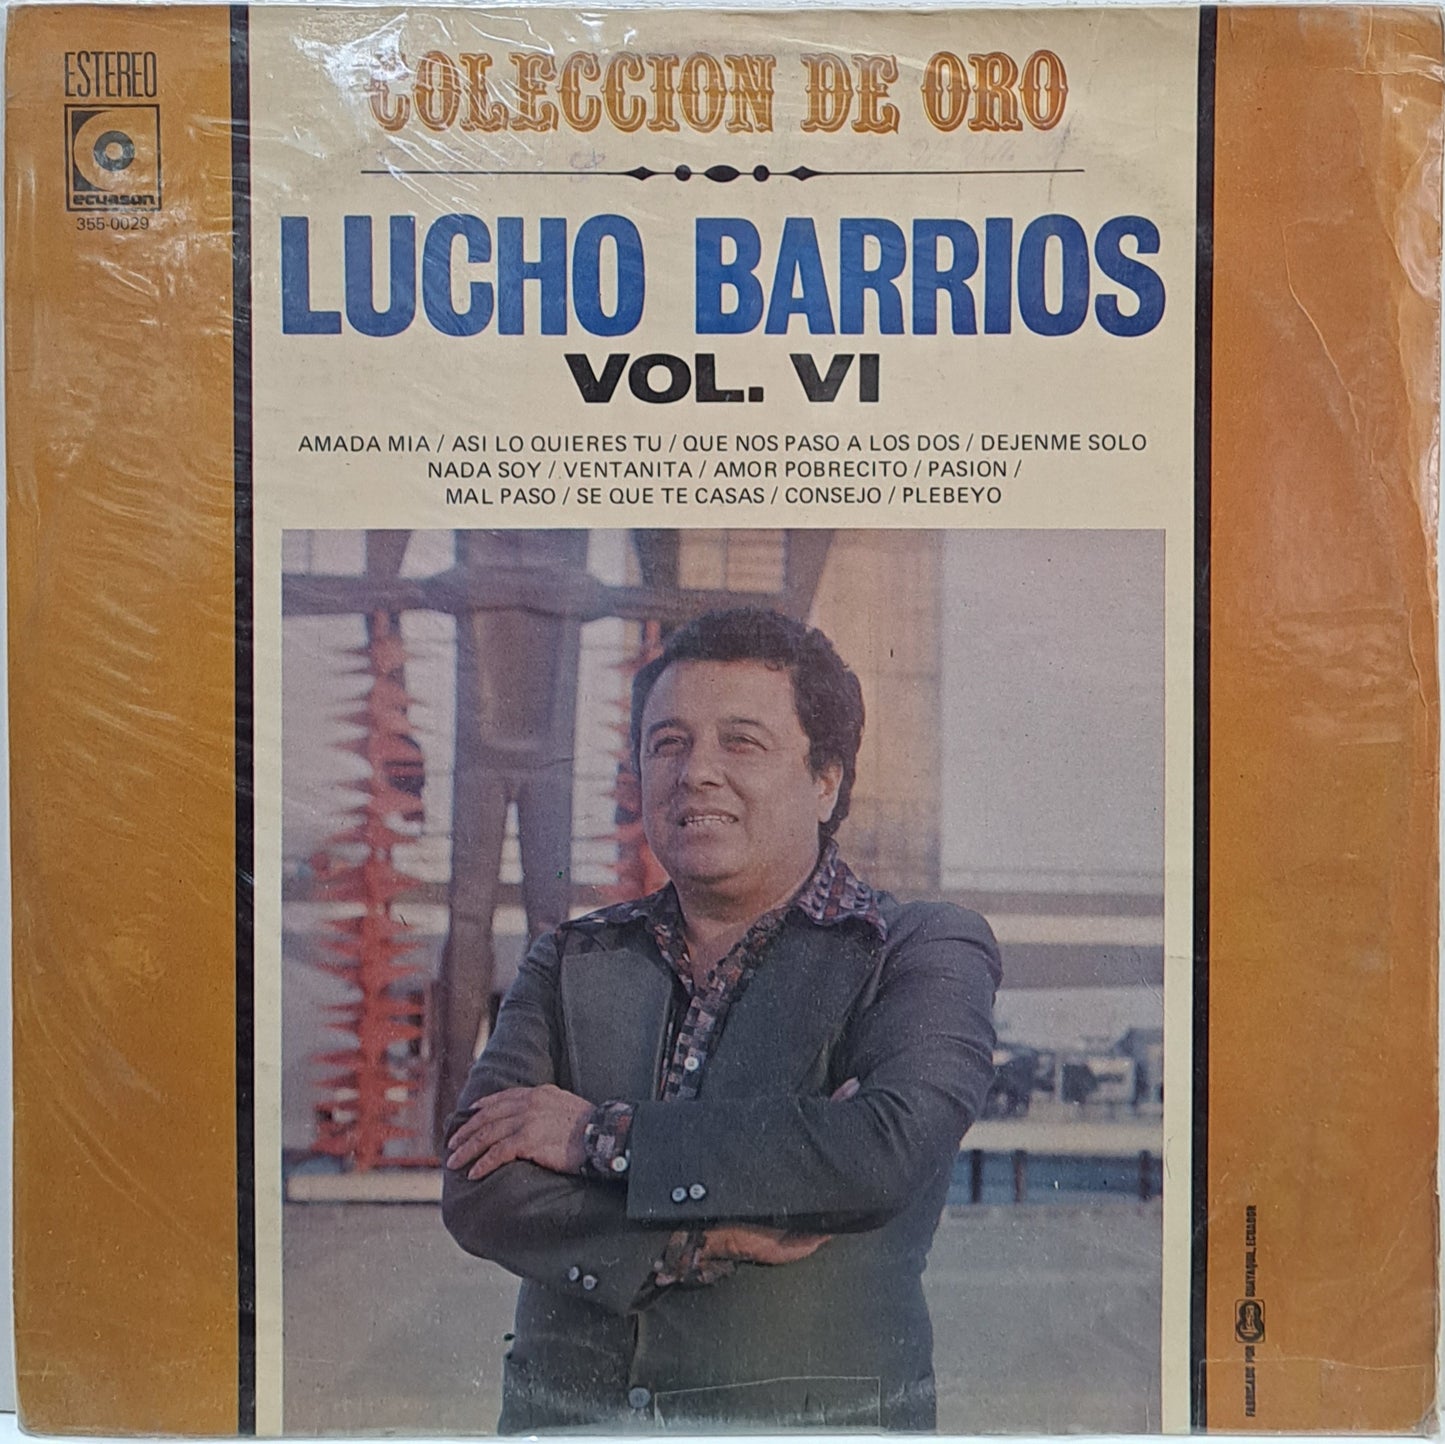 LUCHO BARRIOS - COLECCION DE ORO VOL VI LP